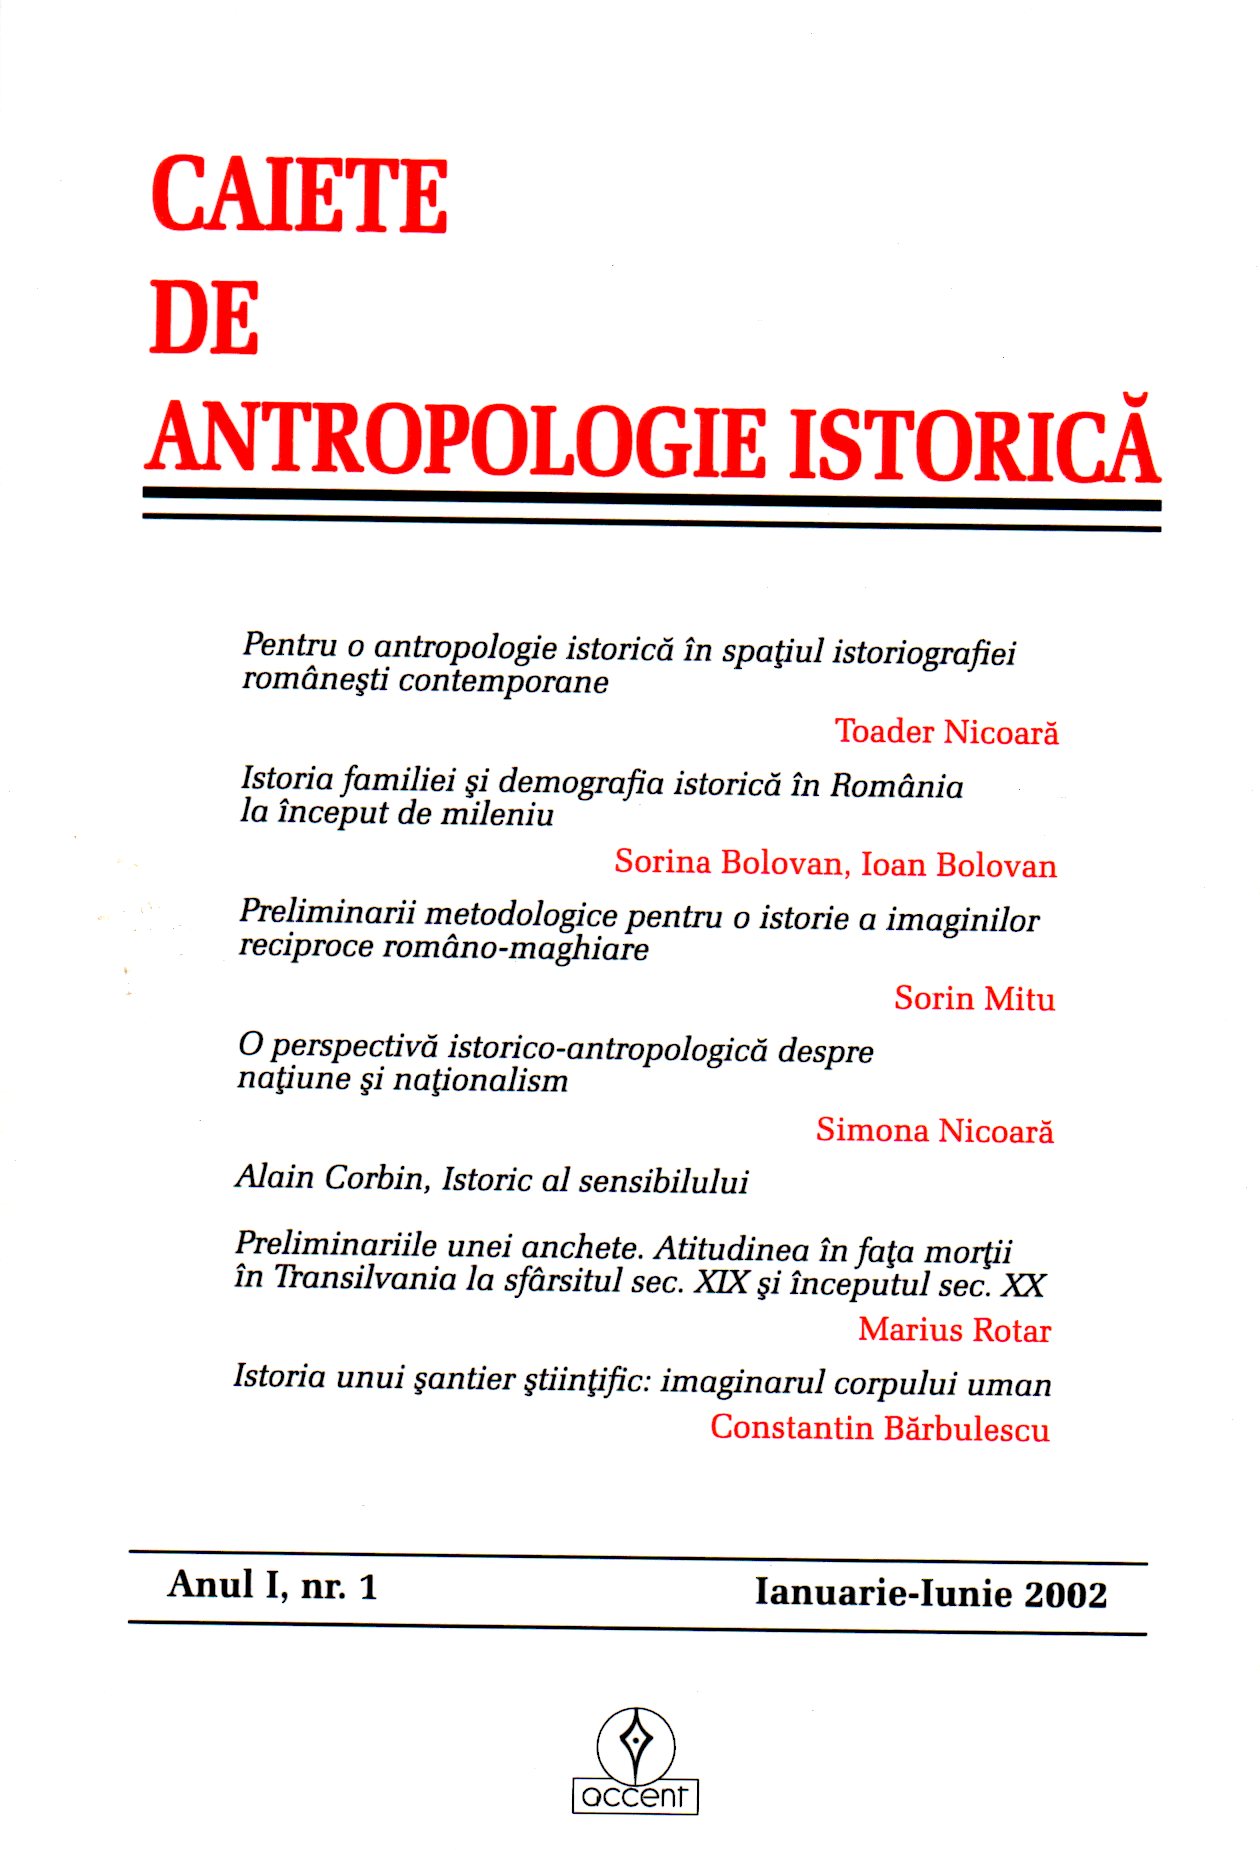 Pentru o antropologie istorică în spaţiul istoriografiei româneşti contemporane